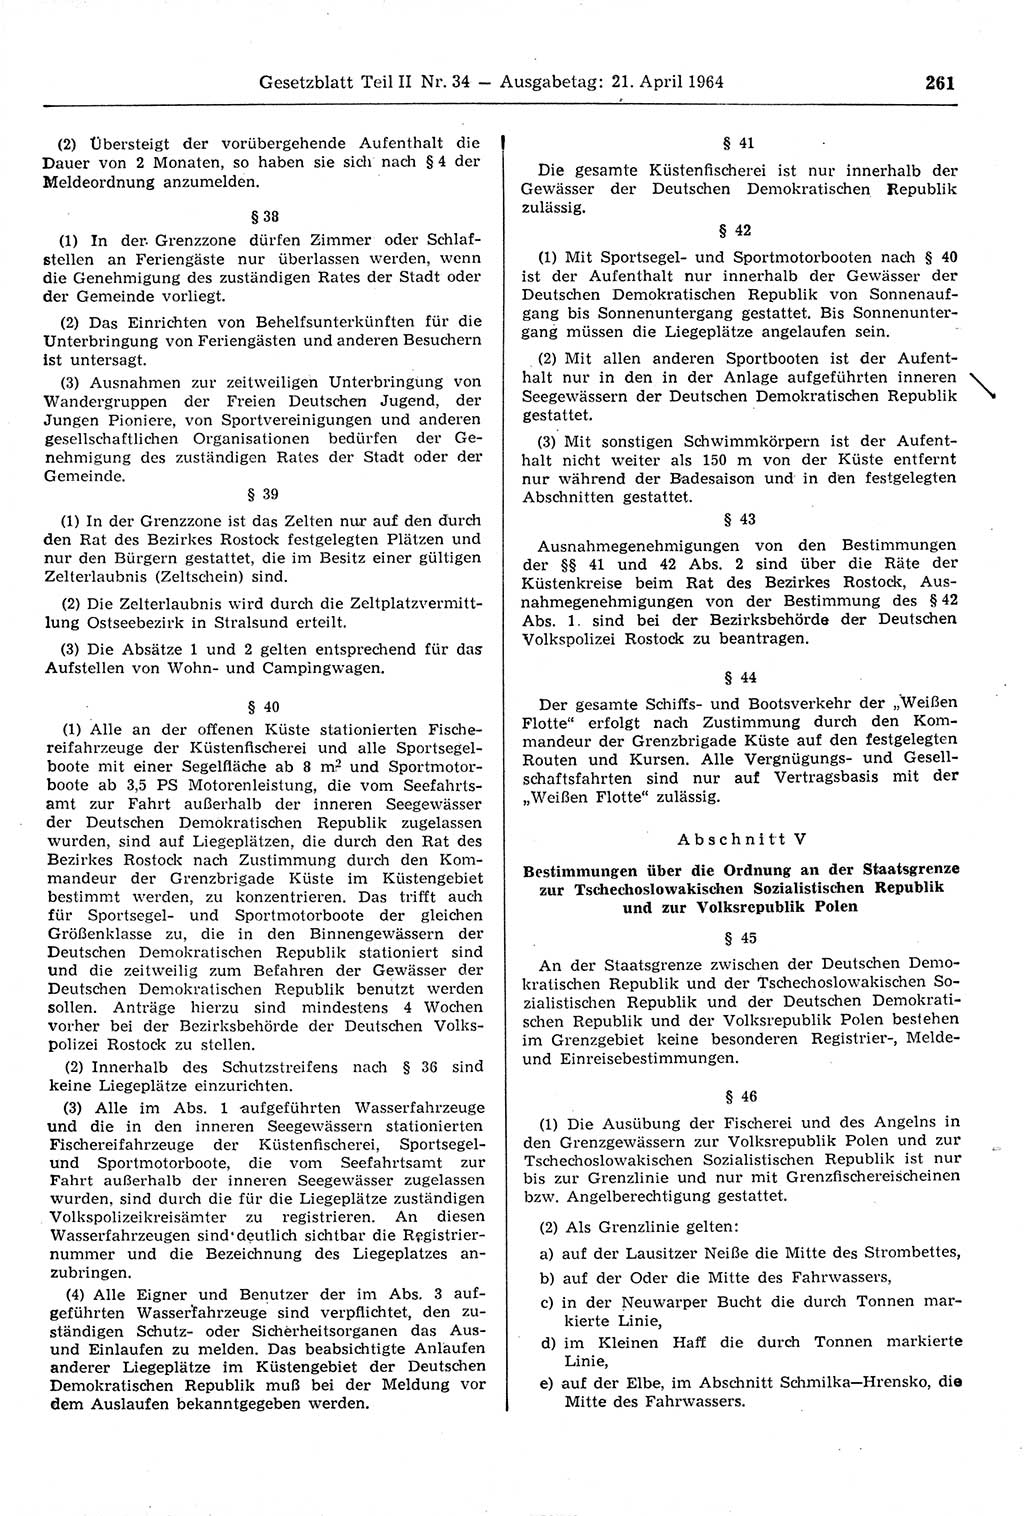 Gesetzblatt (GBl.) der Deutschen Demokratischen Republik (DDR) Teil ⅠⅠ 1964, Seite 261 (GBl. DDR ⅠⅠ 1964, S. 261)